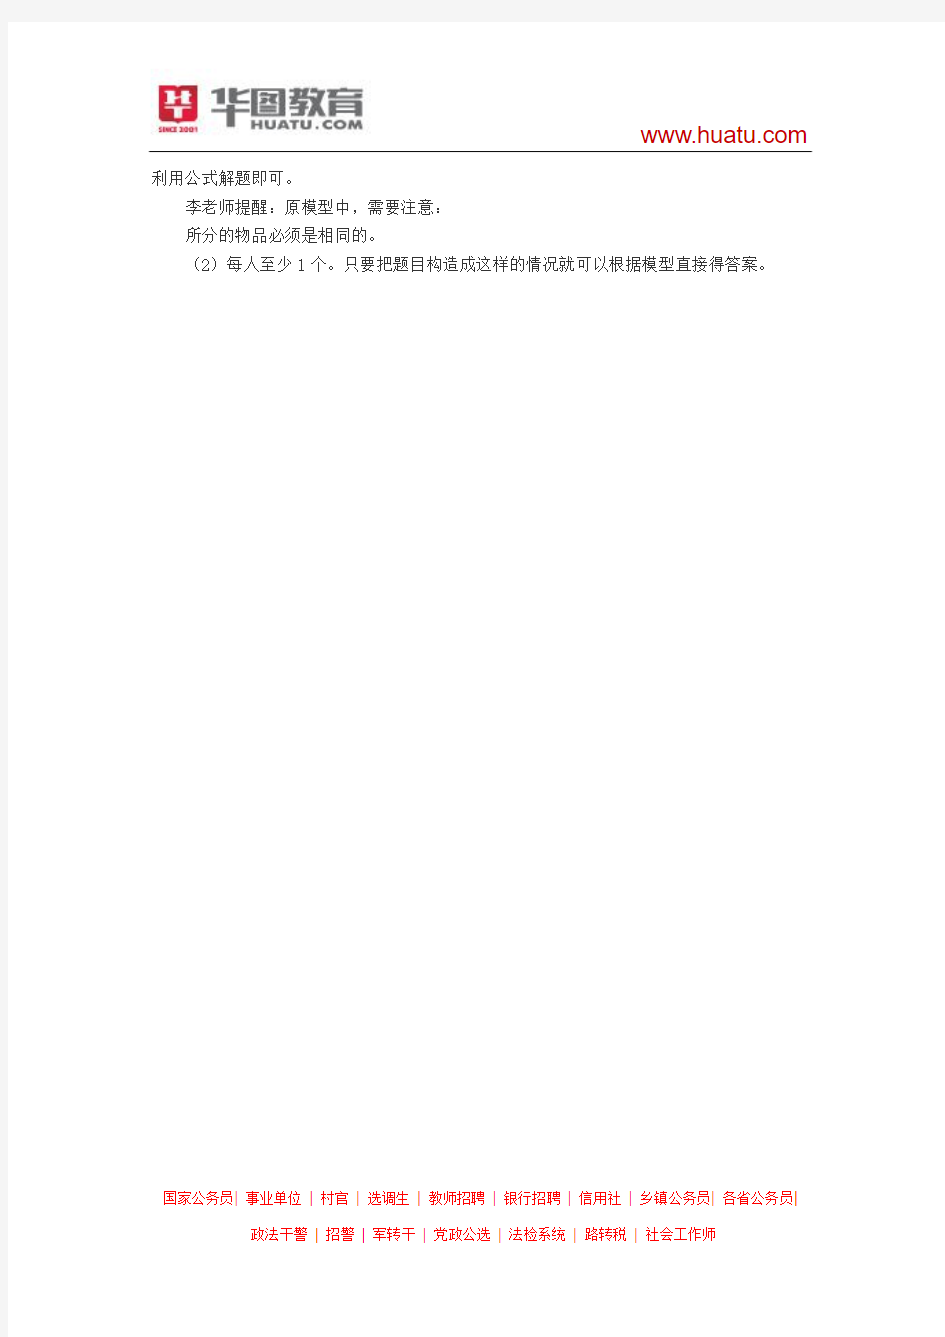 2015河南检察院考试行测指导：插板法